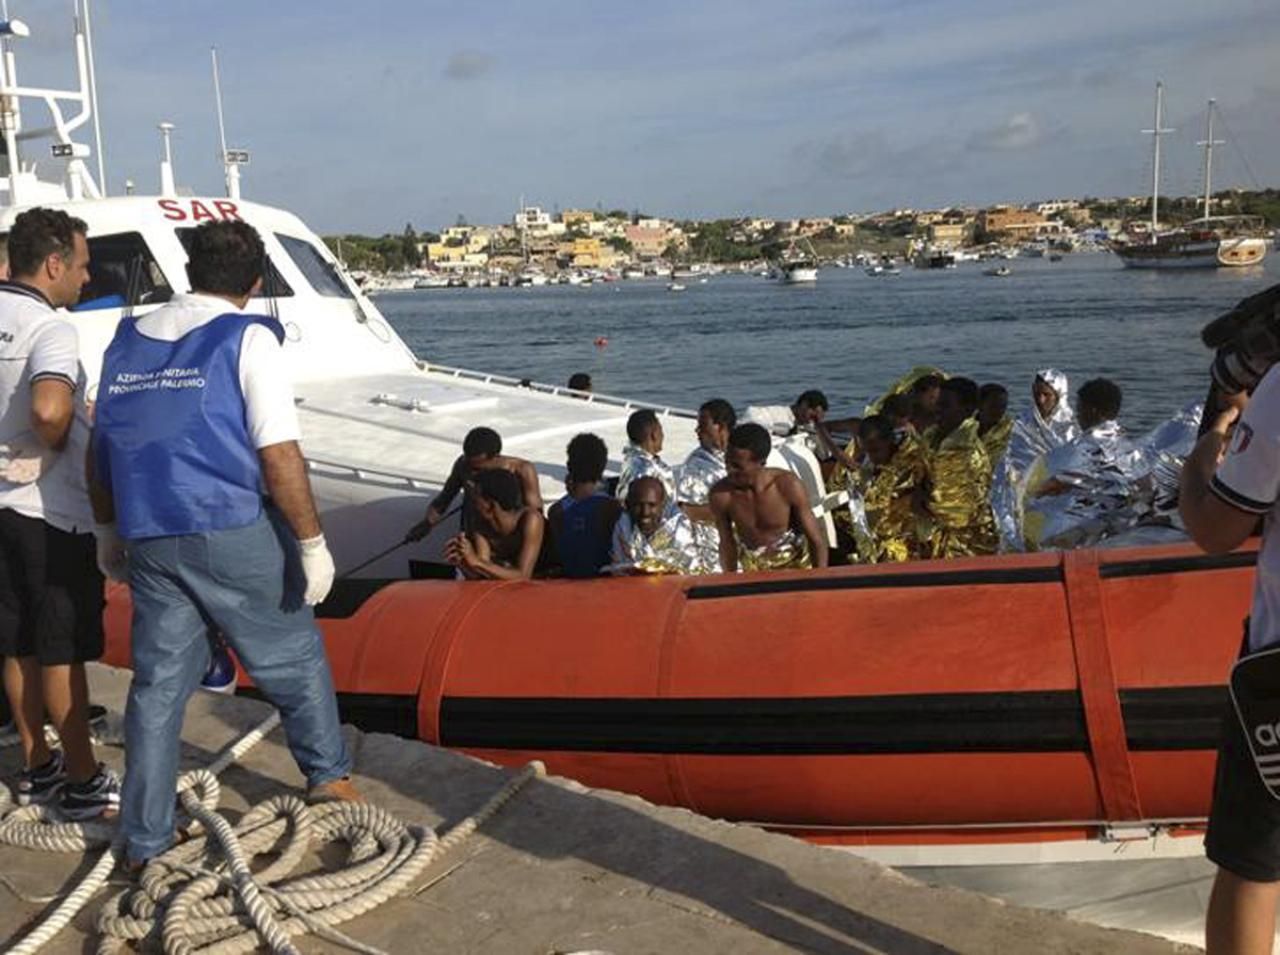 Uprchlíci z Eritrei zachránění u pobřeží Lampedusy